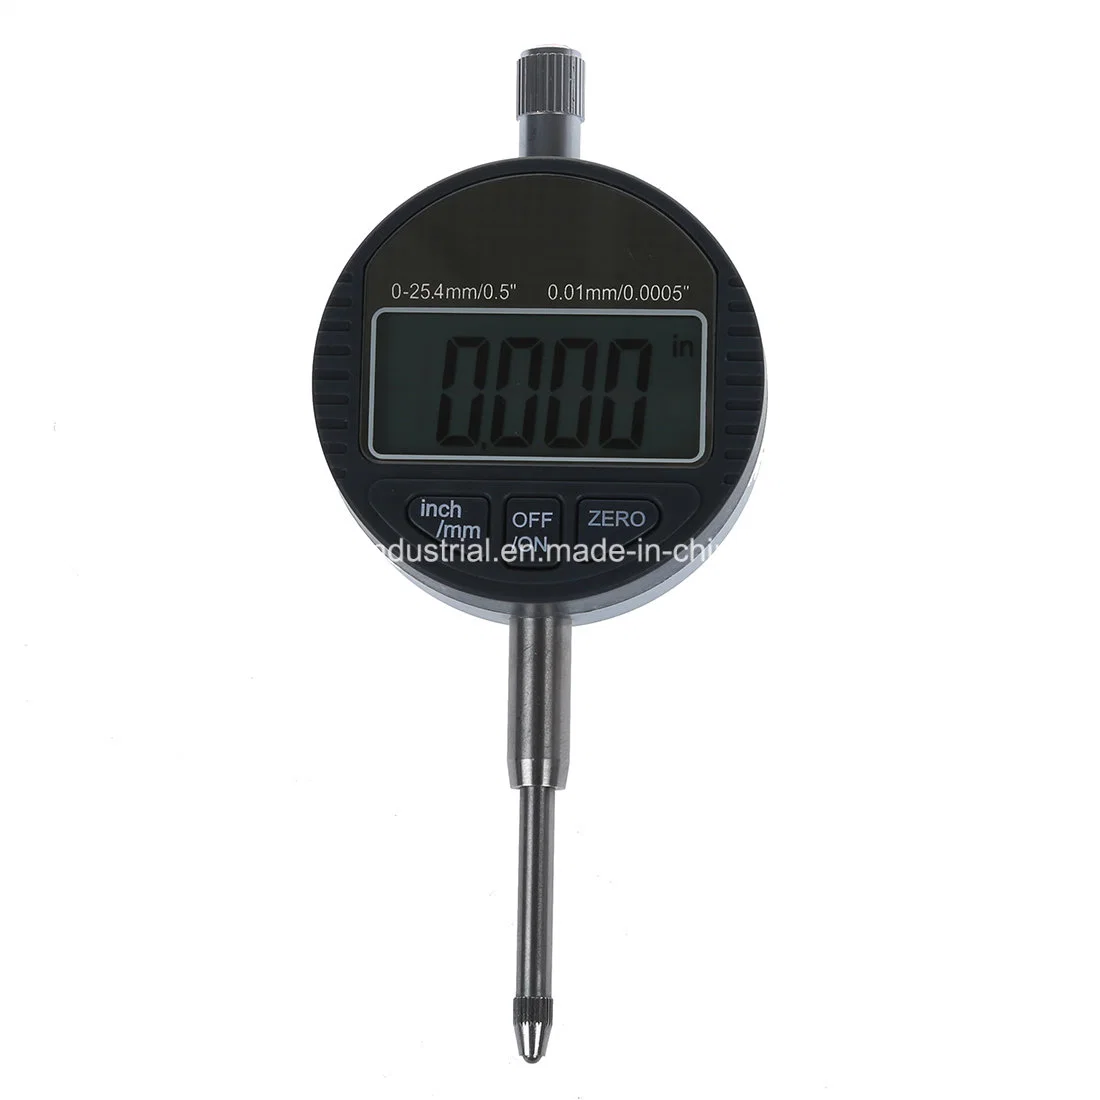 Indicateur numérique comparateur à cadran indicateur électronique numérique gamme 0-25.4mm